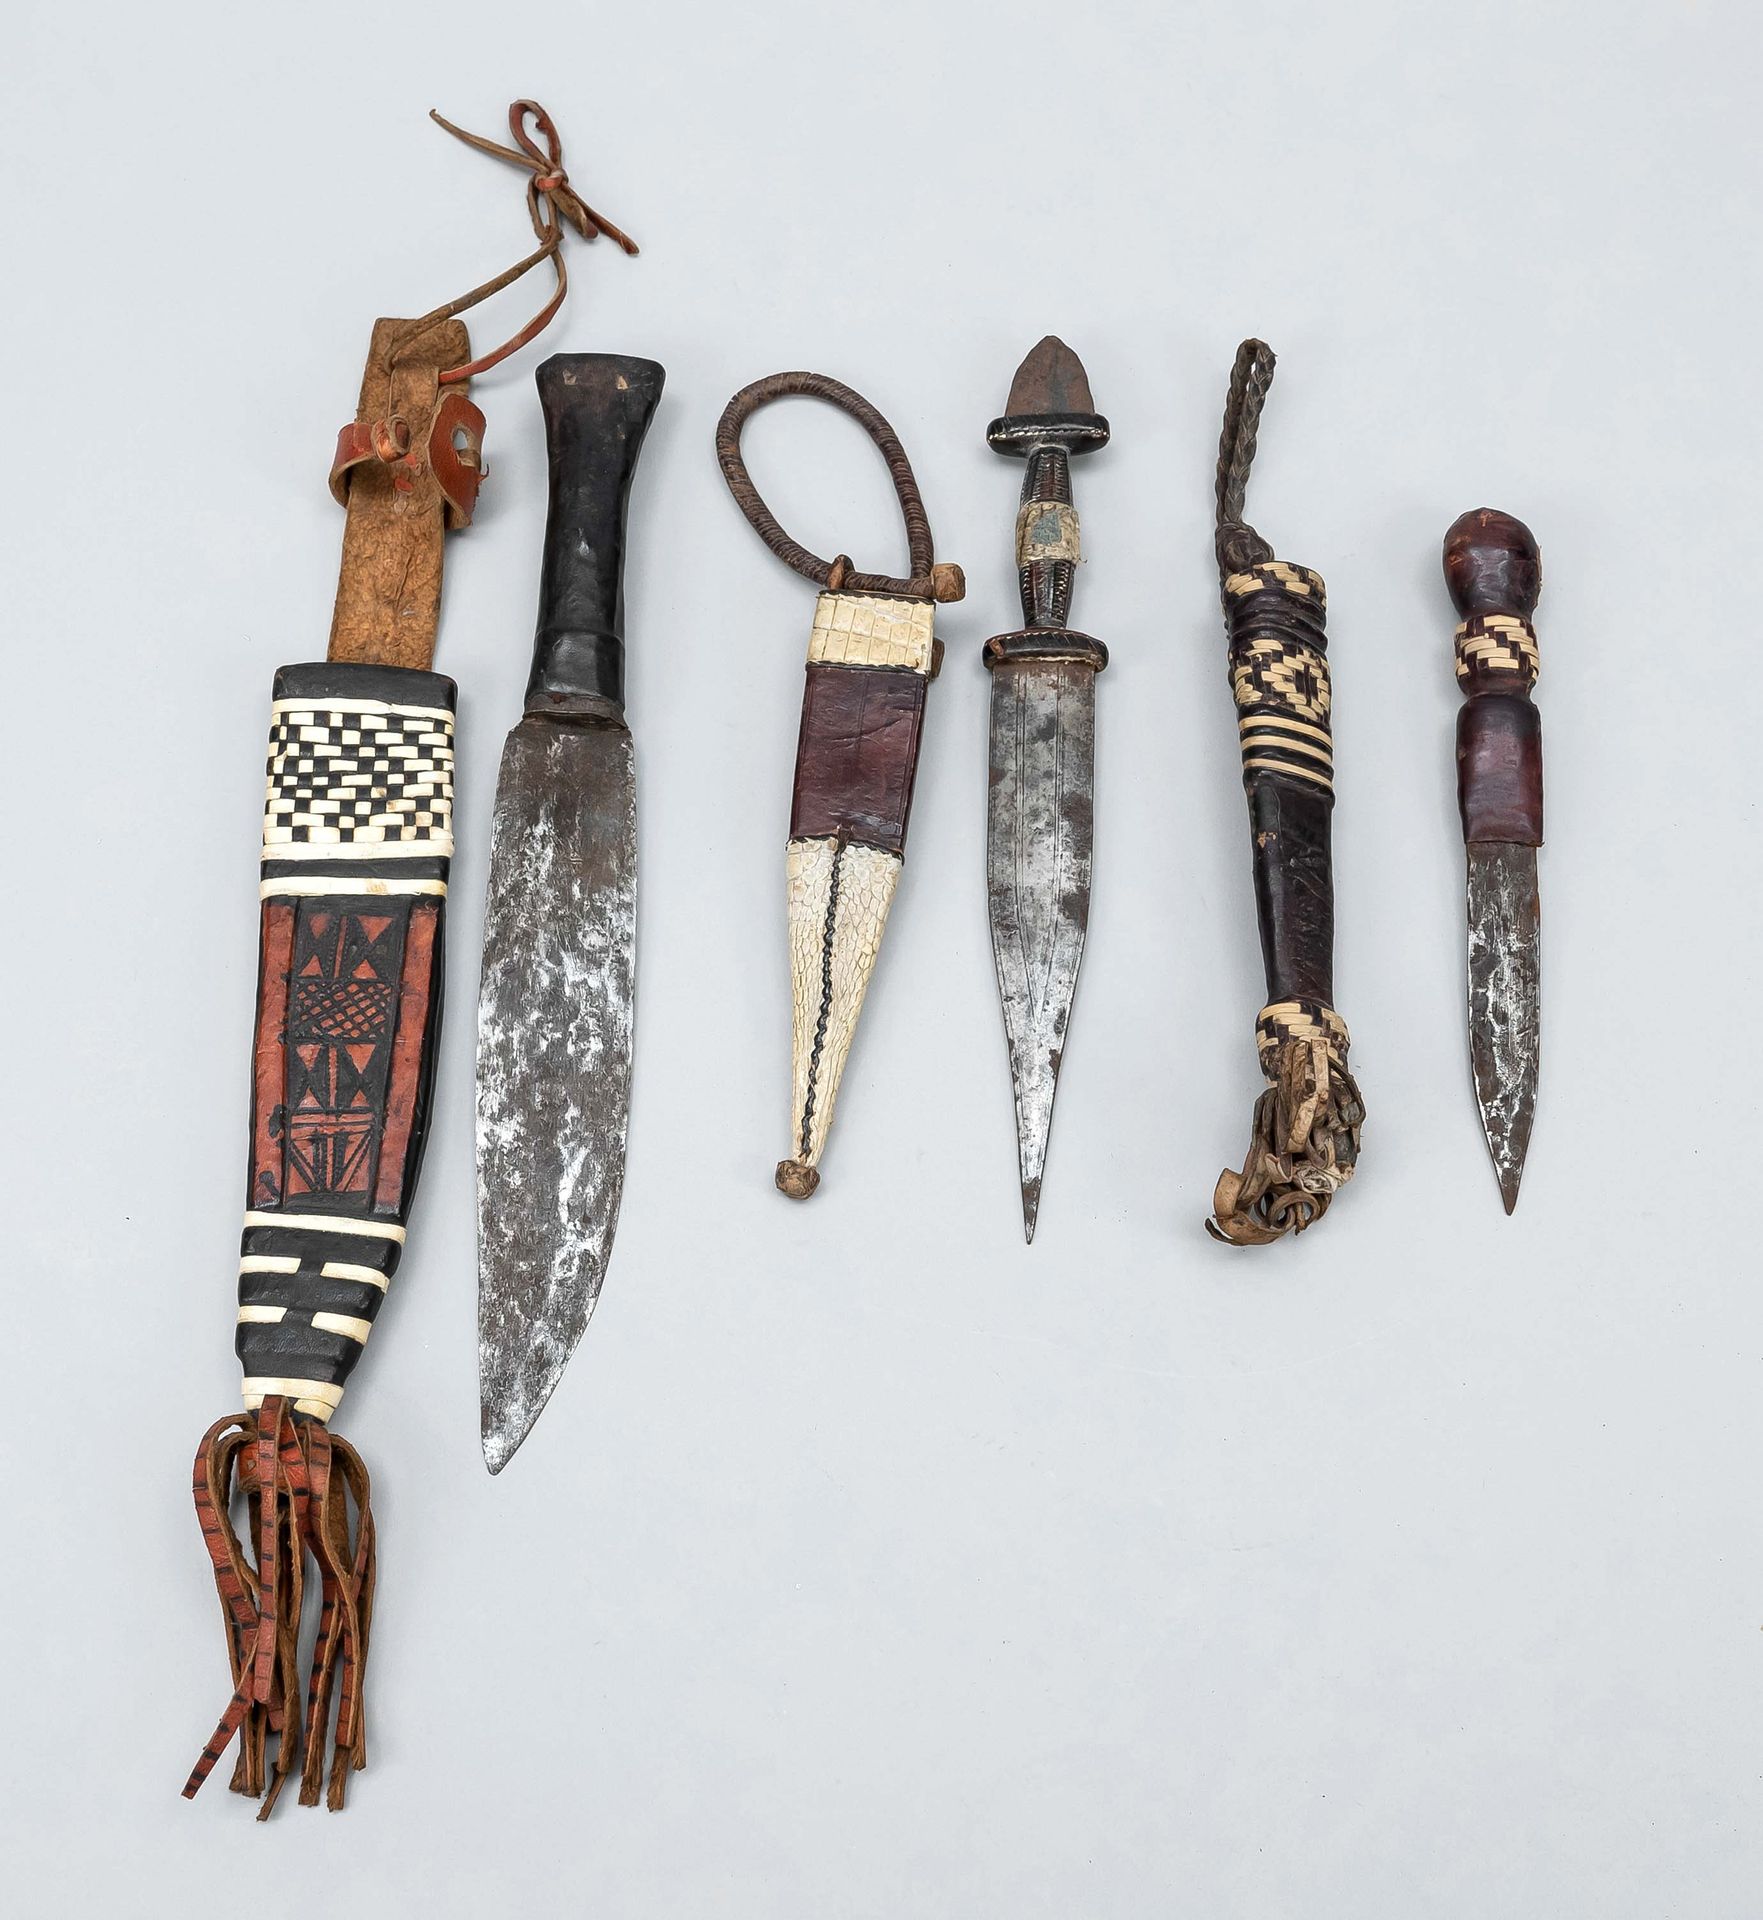 Null 三把仪式用匕首，可能是喀麦隆的，用皮革悬挂，部分因使用而磨损，刀刃部分有铜锈，长38厘米/长32厘米/长26厘米